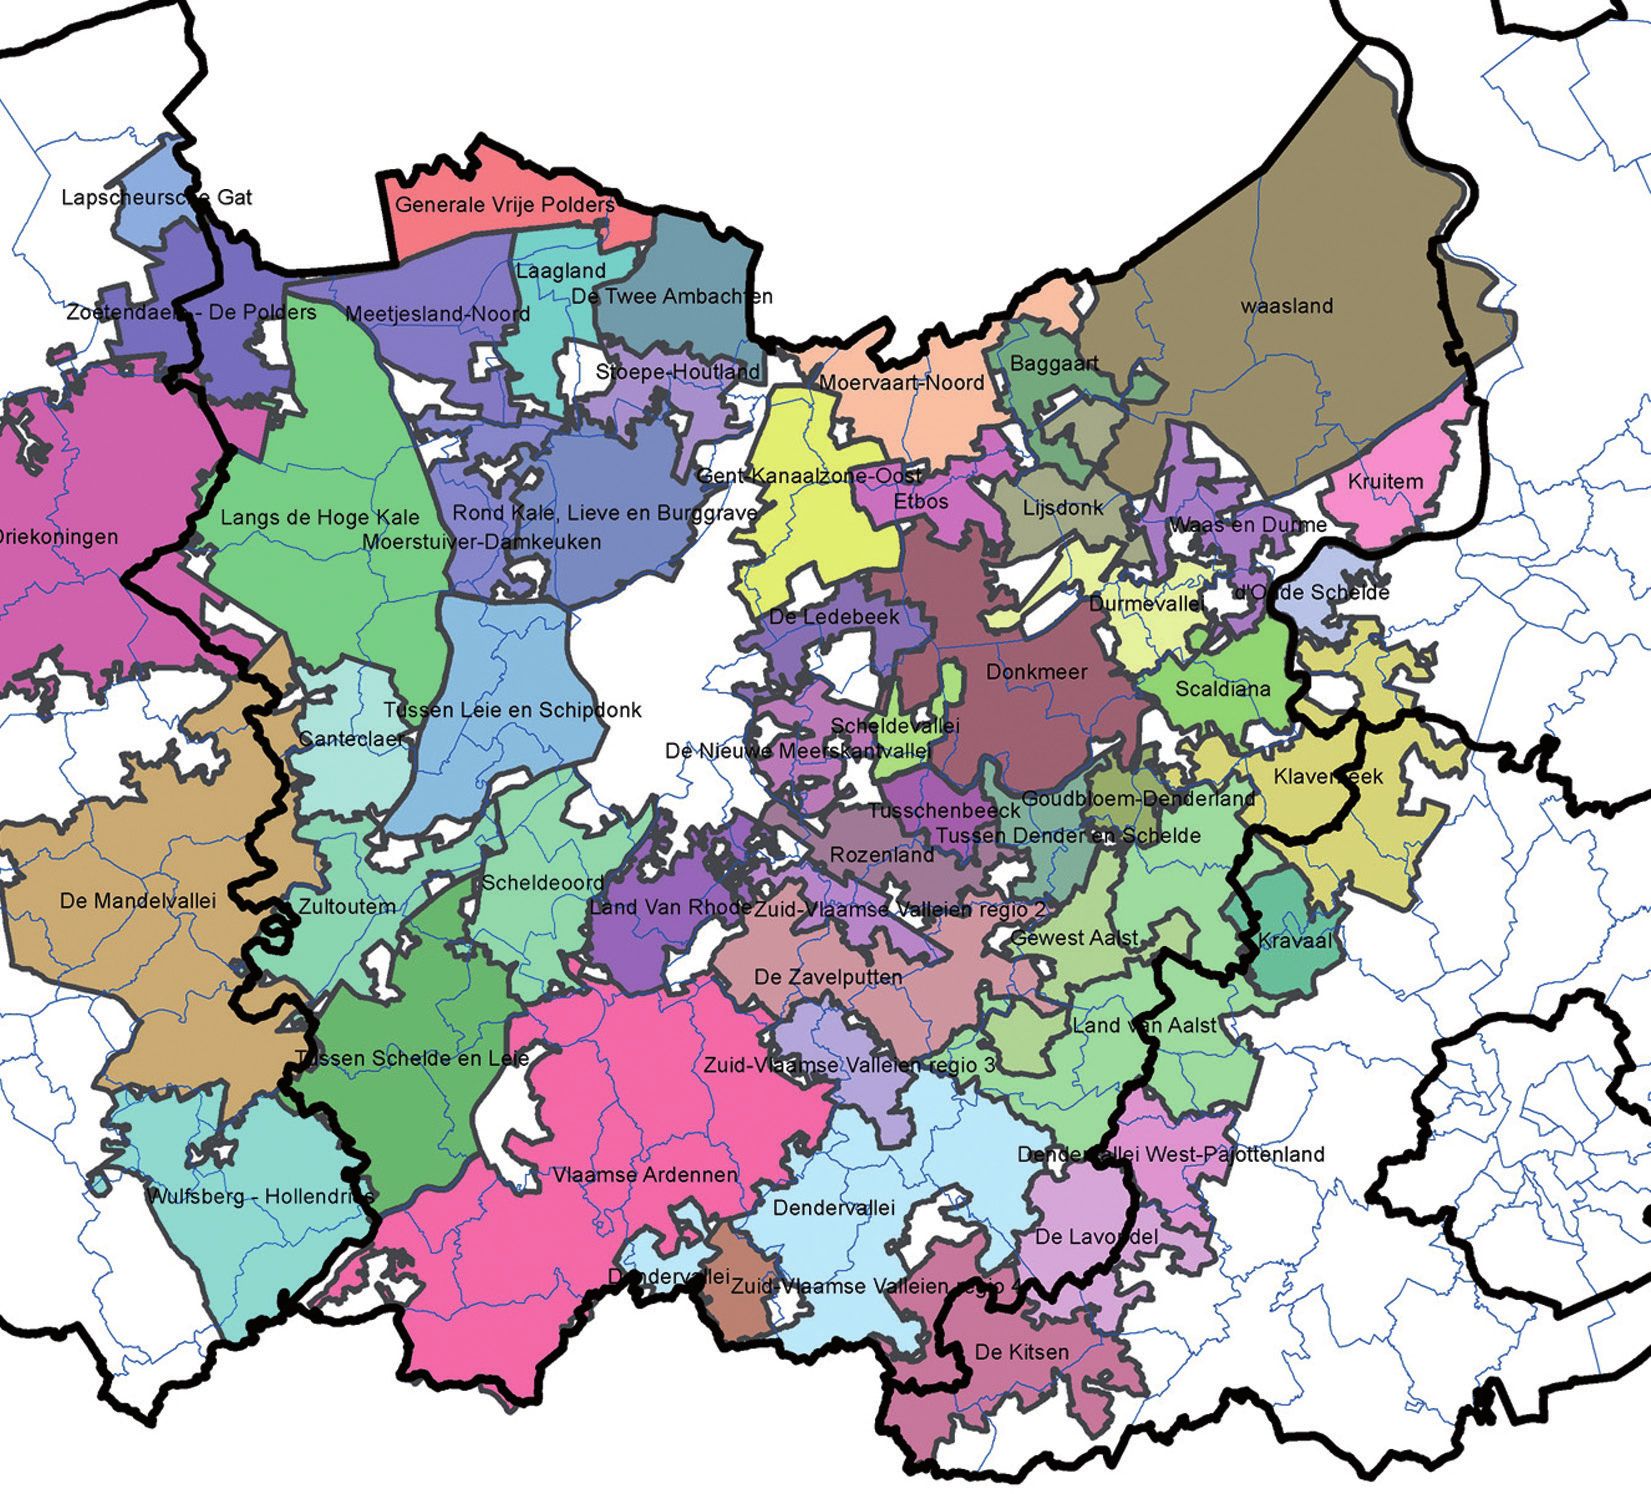 Wildbeheereenheden in Oost-Vlaanderen Wildbeheereenheden in Oost-Vlaanderen (gekleurde